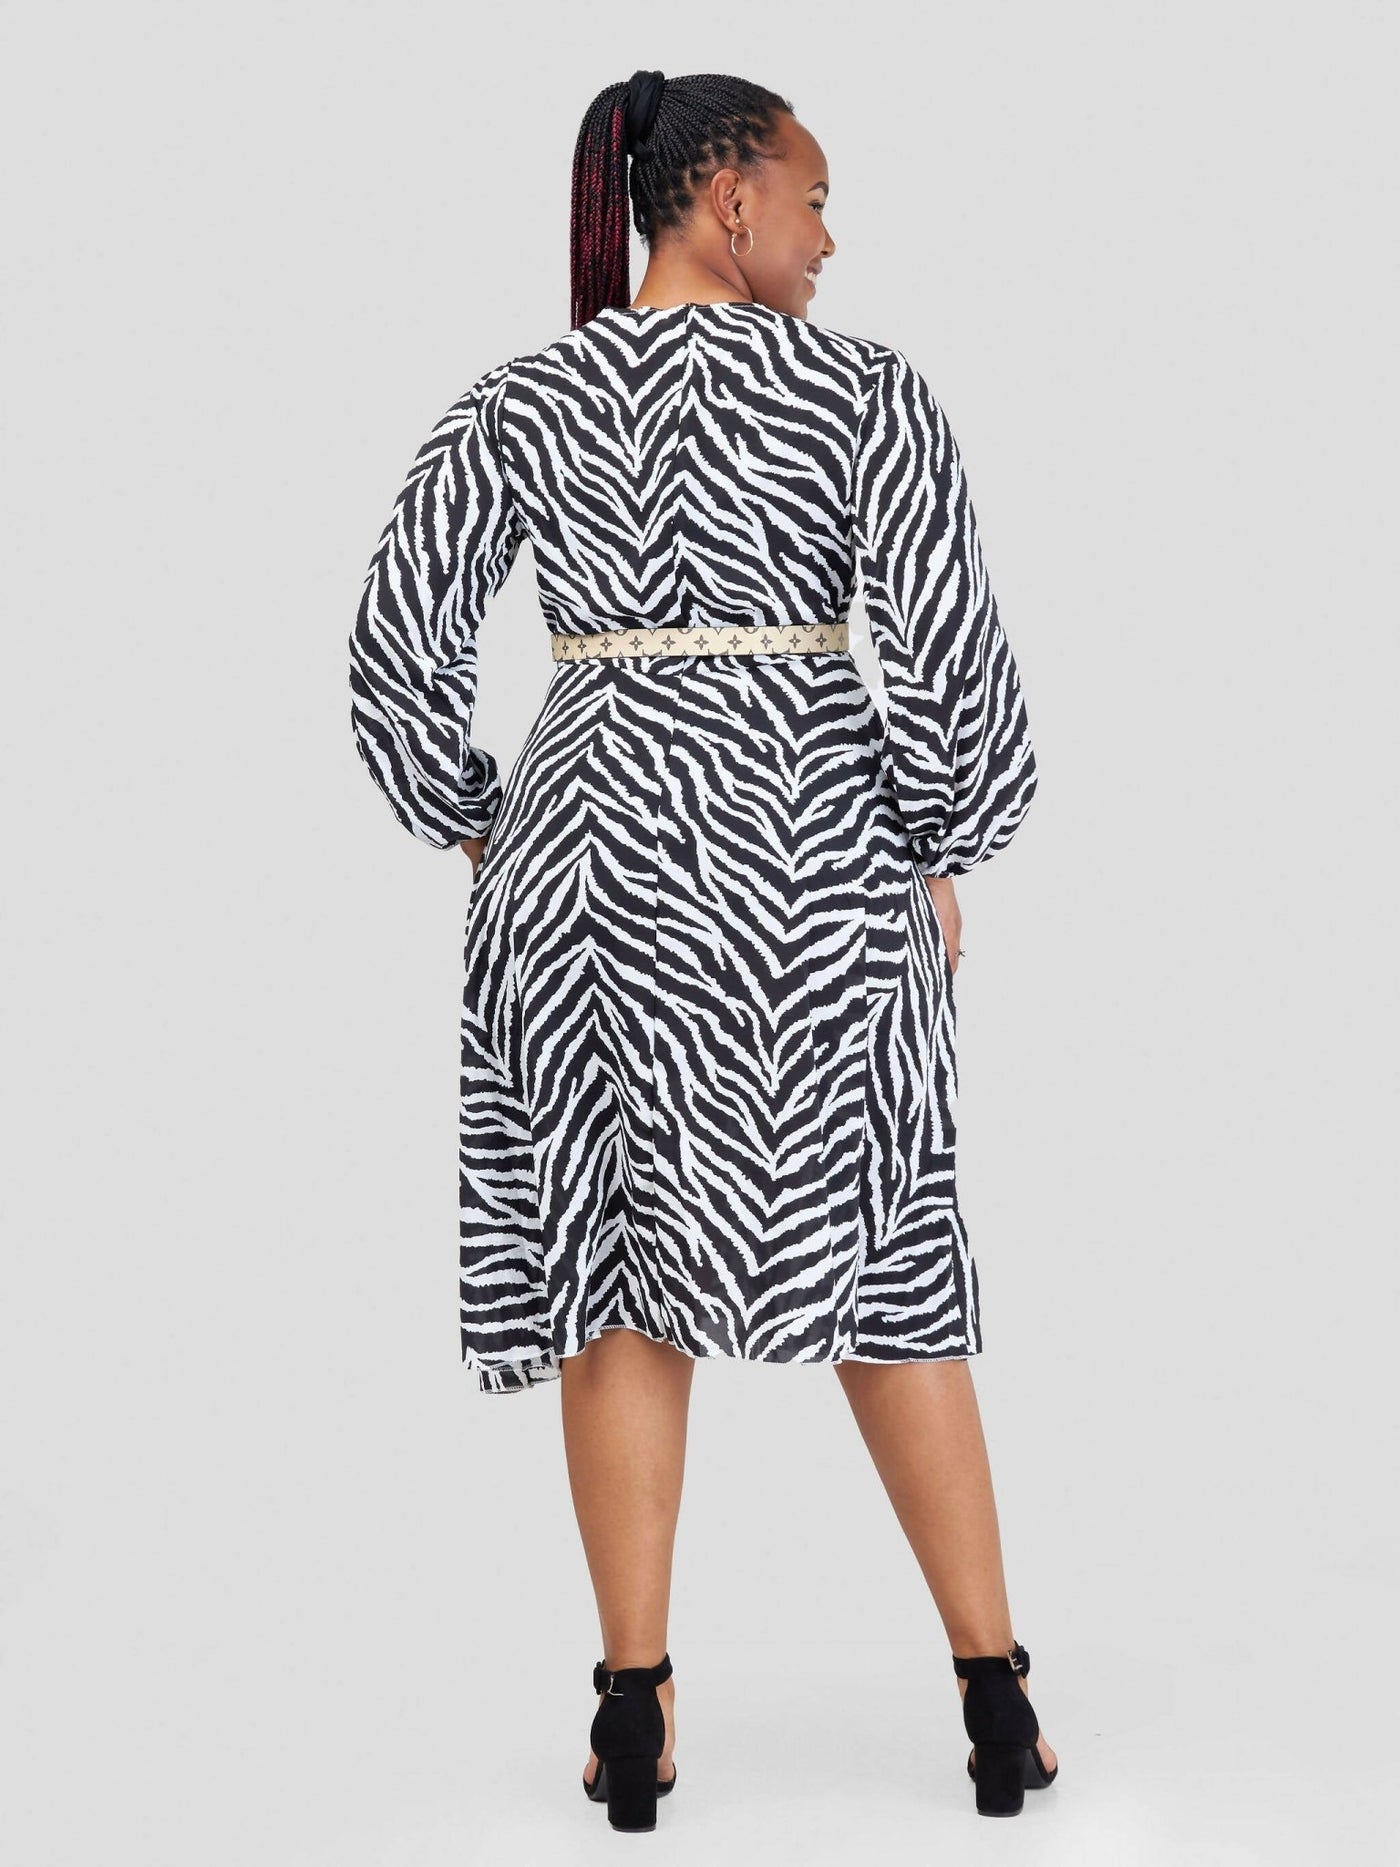 Home Of Colors Zebra Print Dress - Black/White - Shopzetu